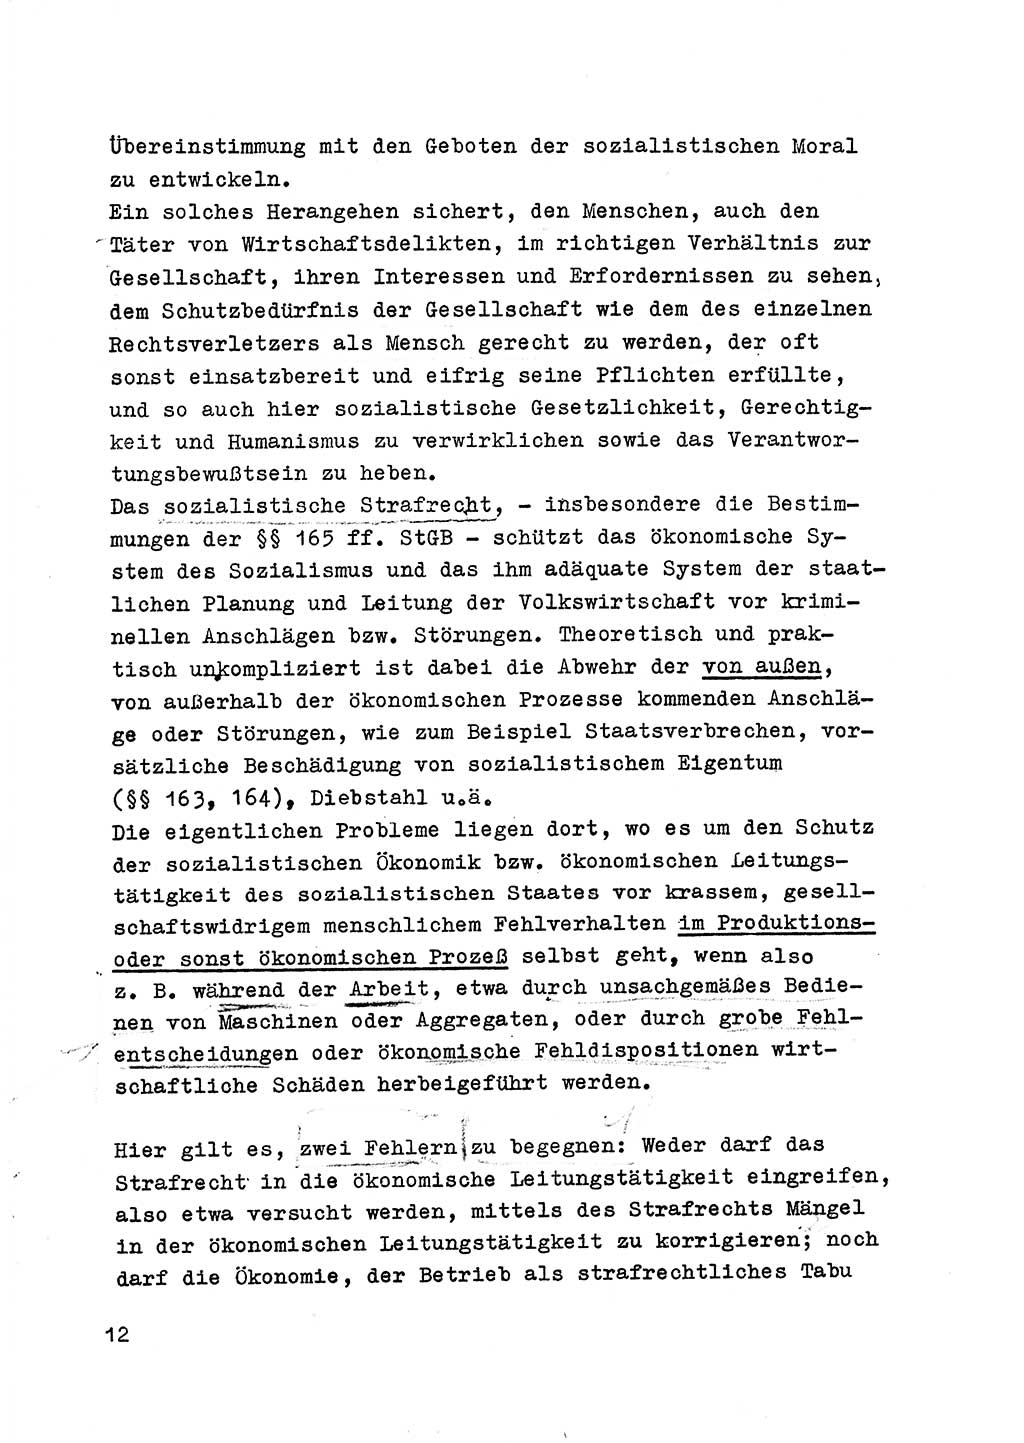 Strafrecht der DDR (Deutsche Demokratische Republik), Besonderer Teil, Lehrmaterial, Heft 6 1970, Seite 12 (Strafr. DDR BT Lehrmat. H. 6 1970, S. 12)